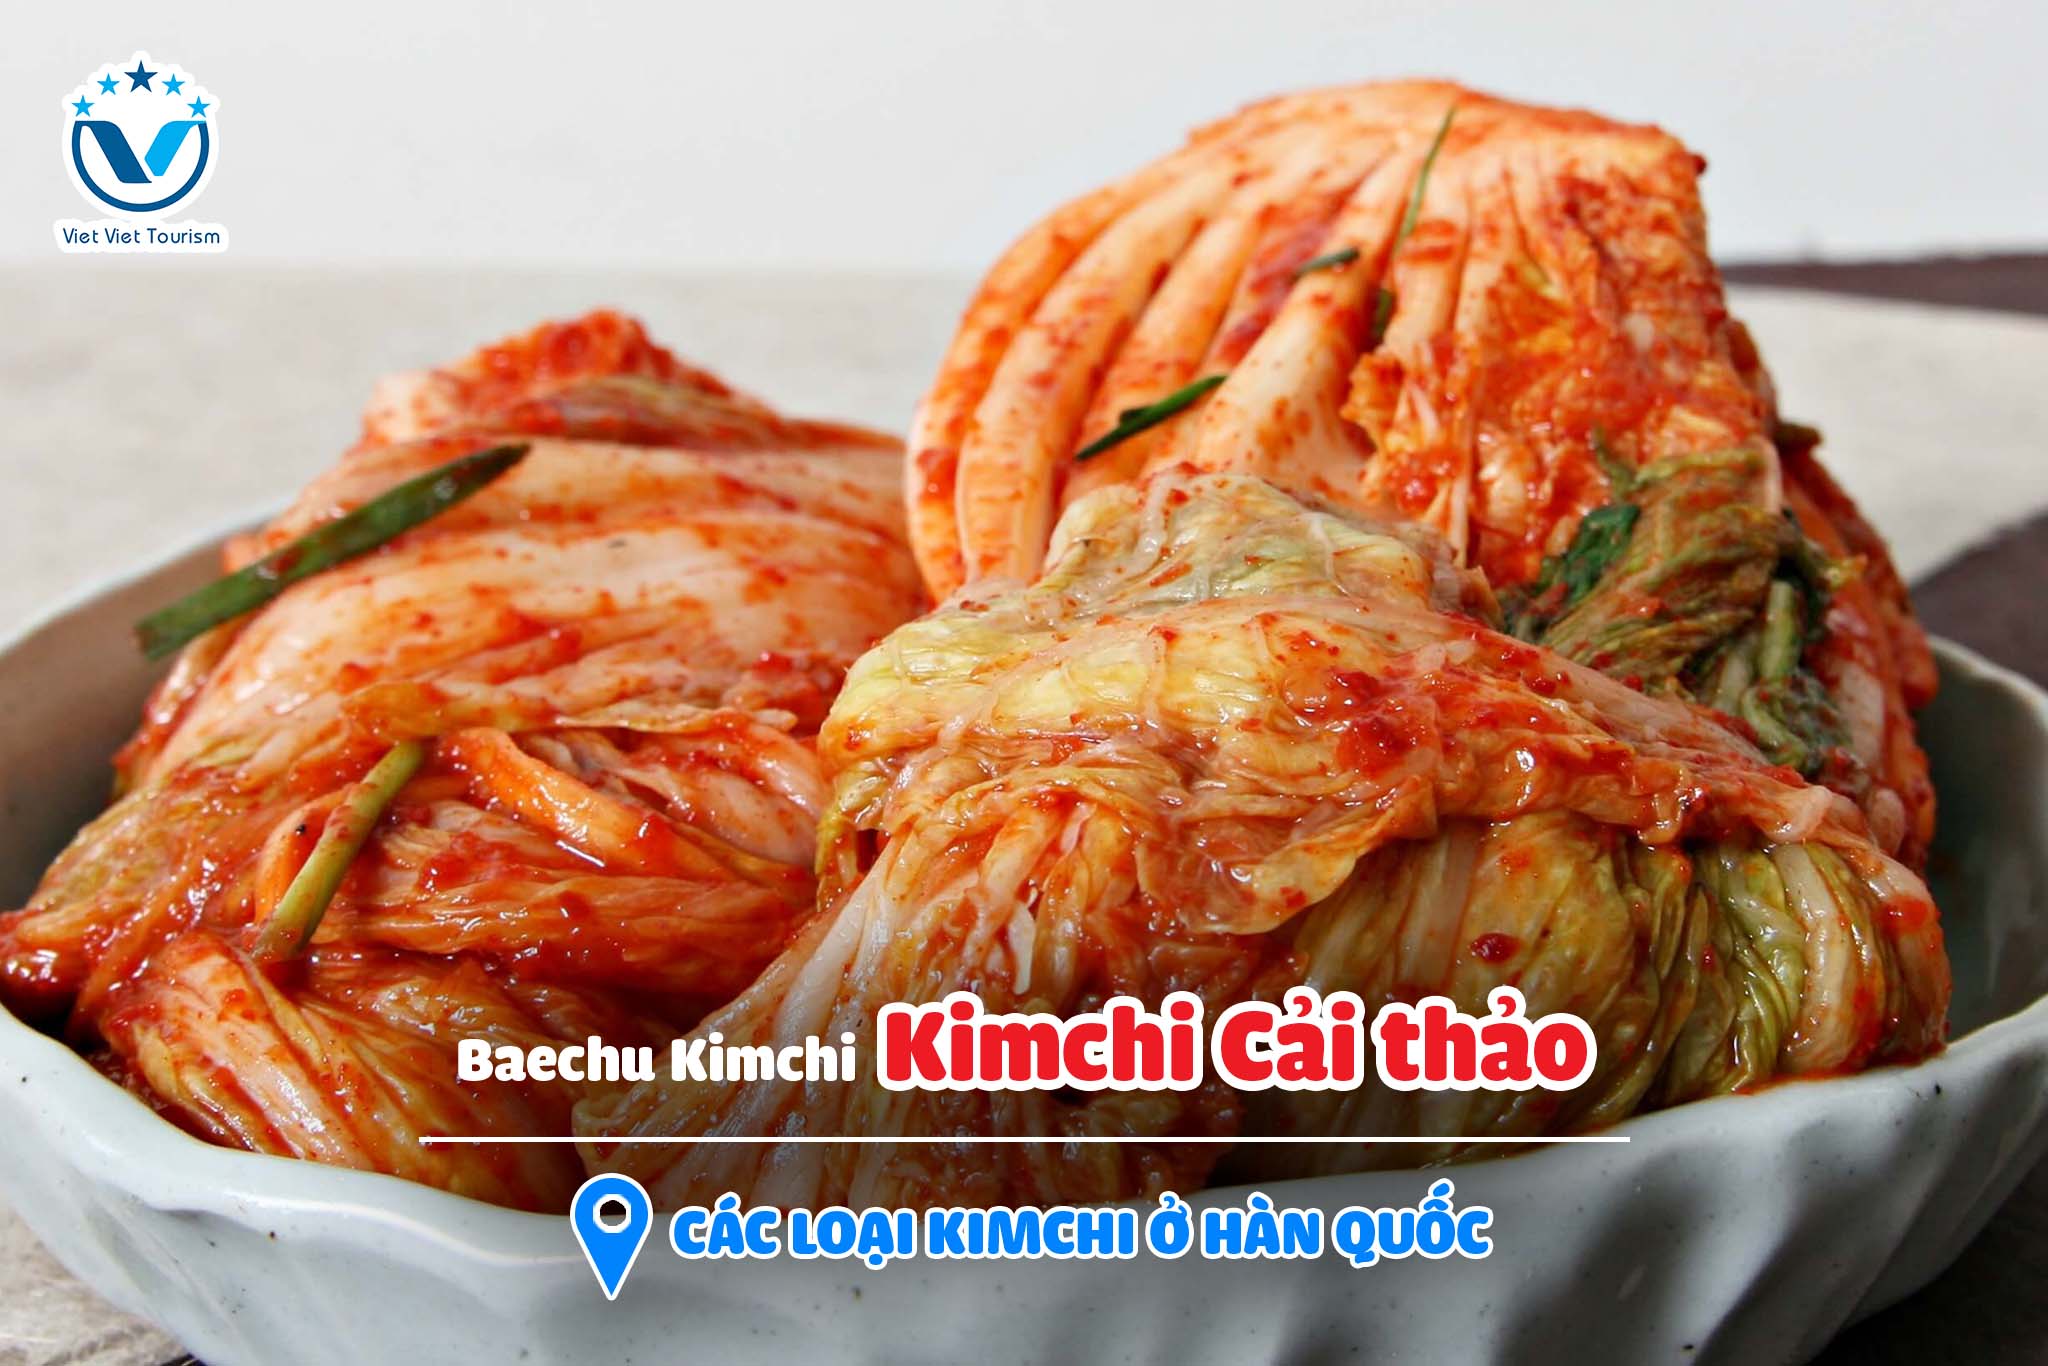 Kimchi VVT 1. Baechu Kimchi